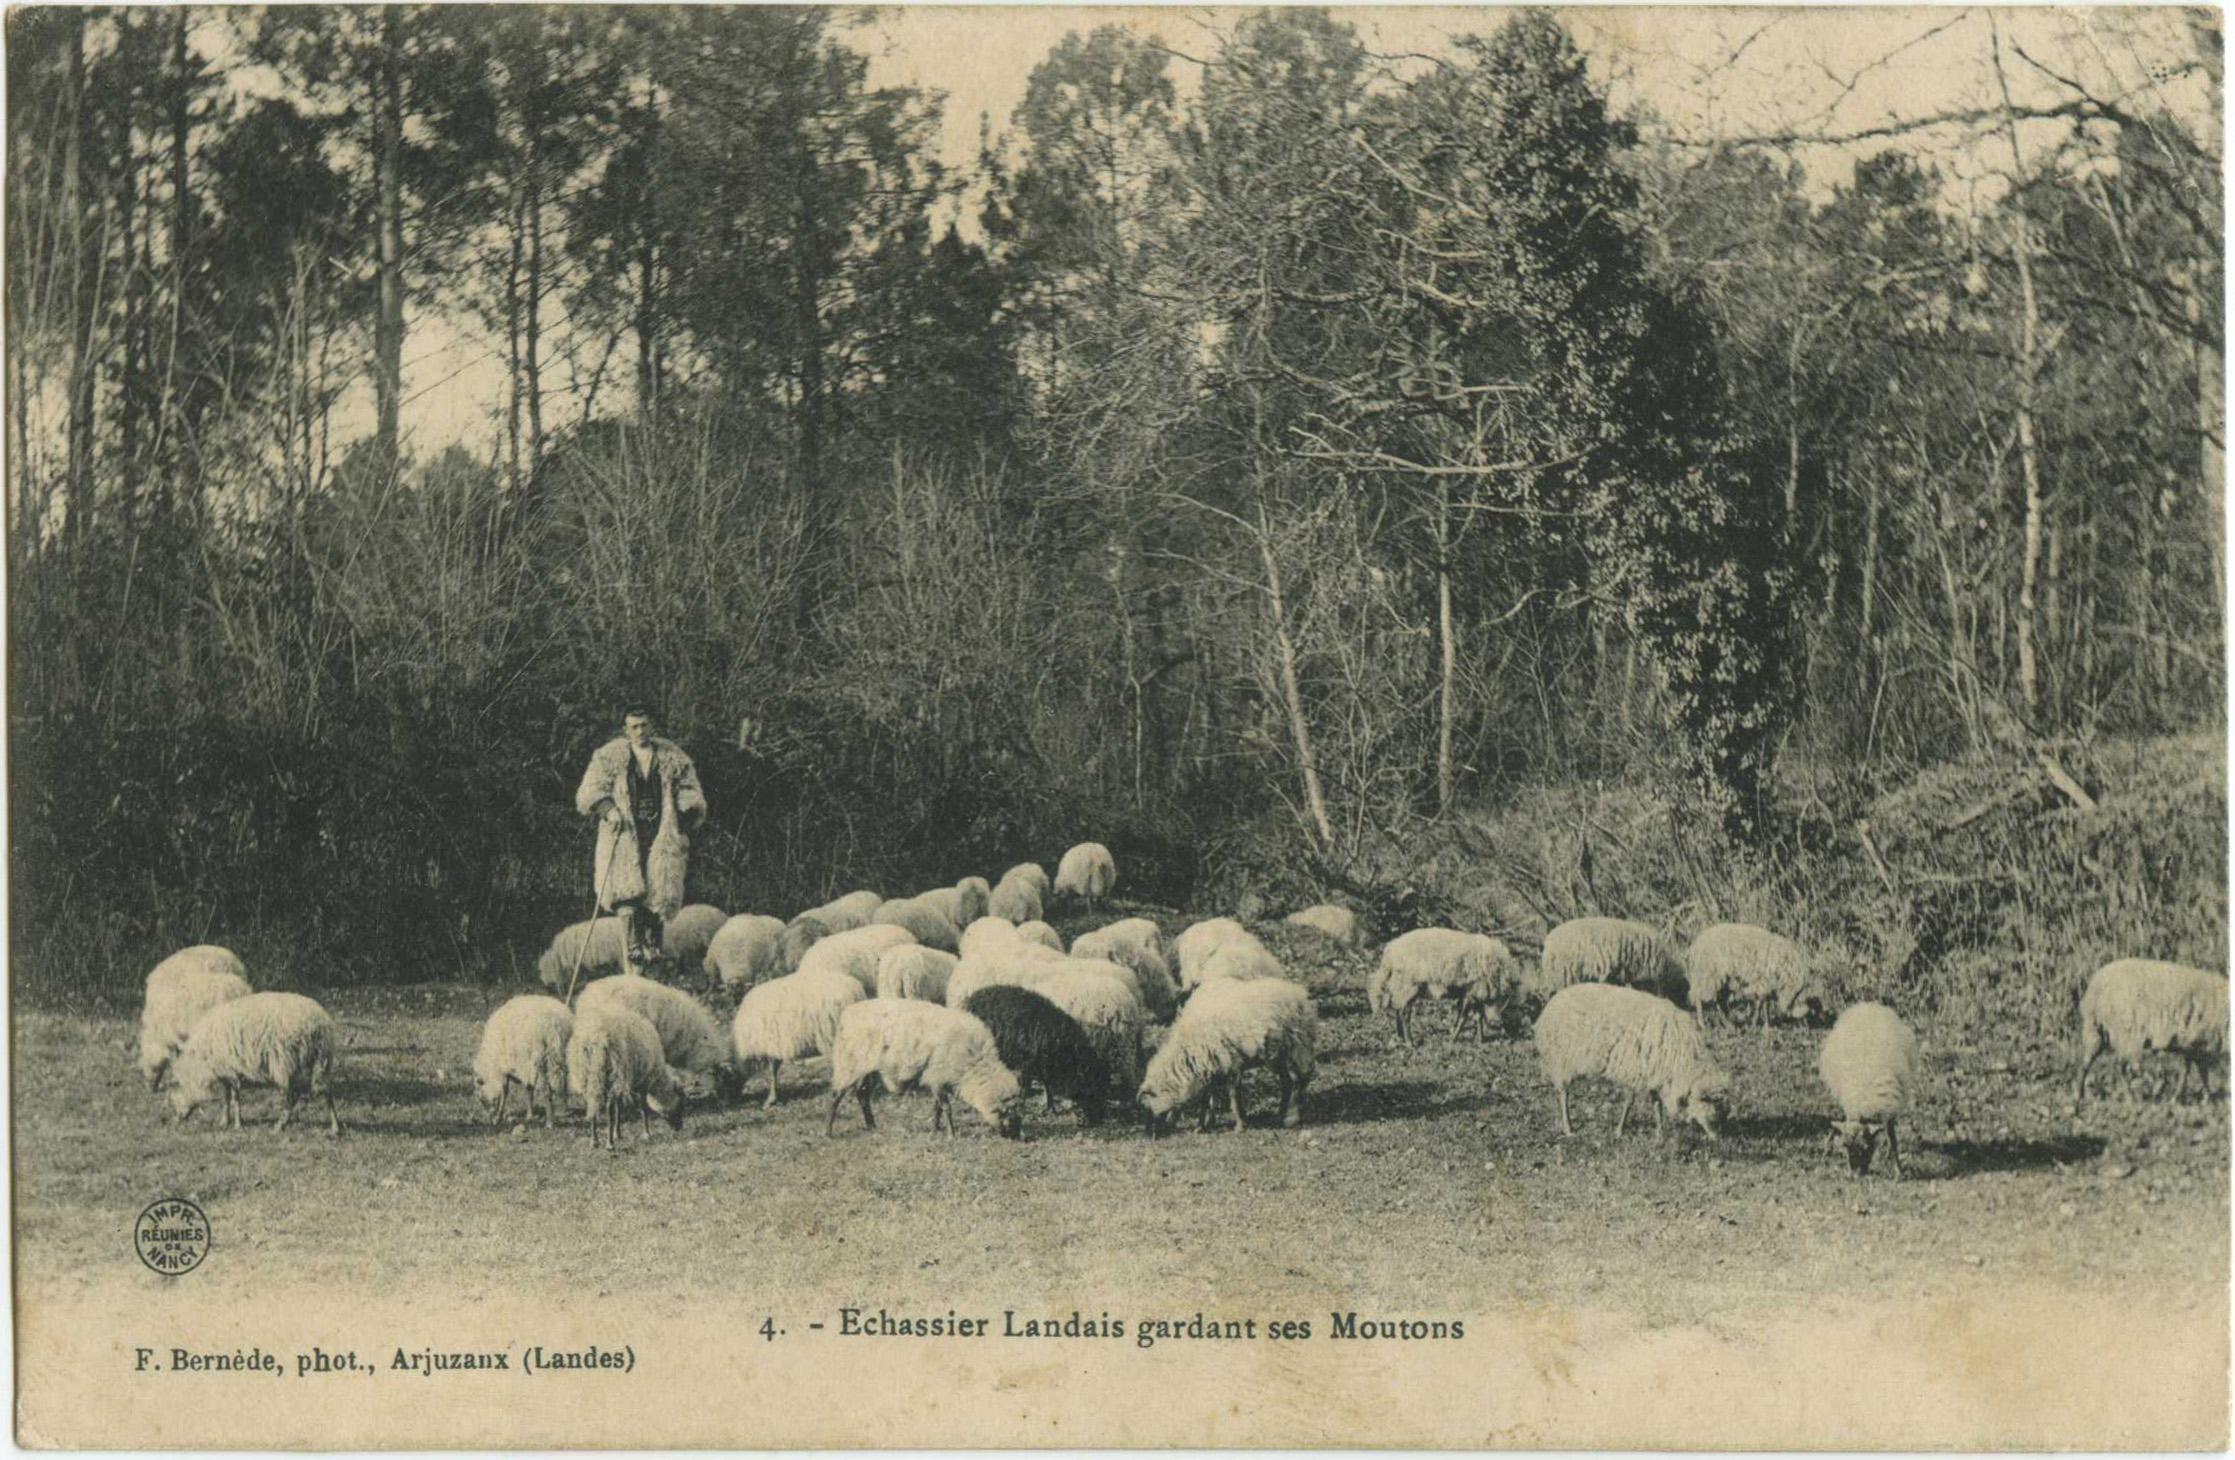 Landes - Echassier Landais gardant ses Moutons